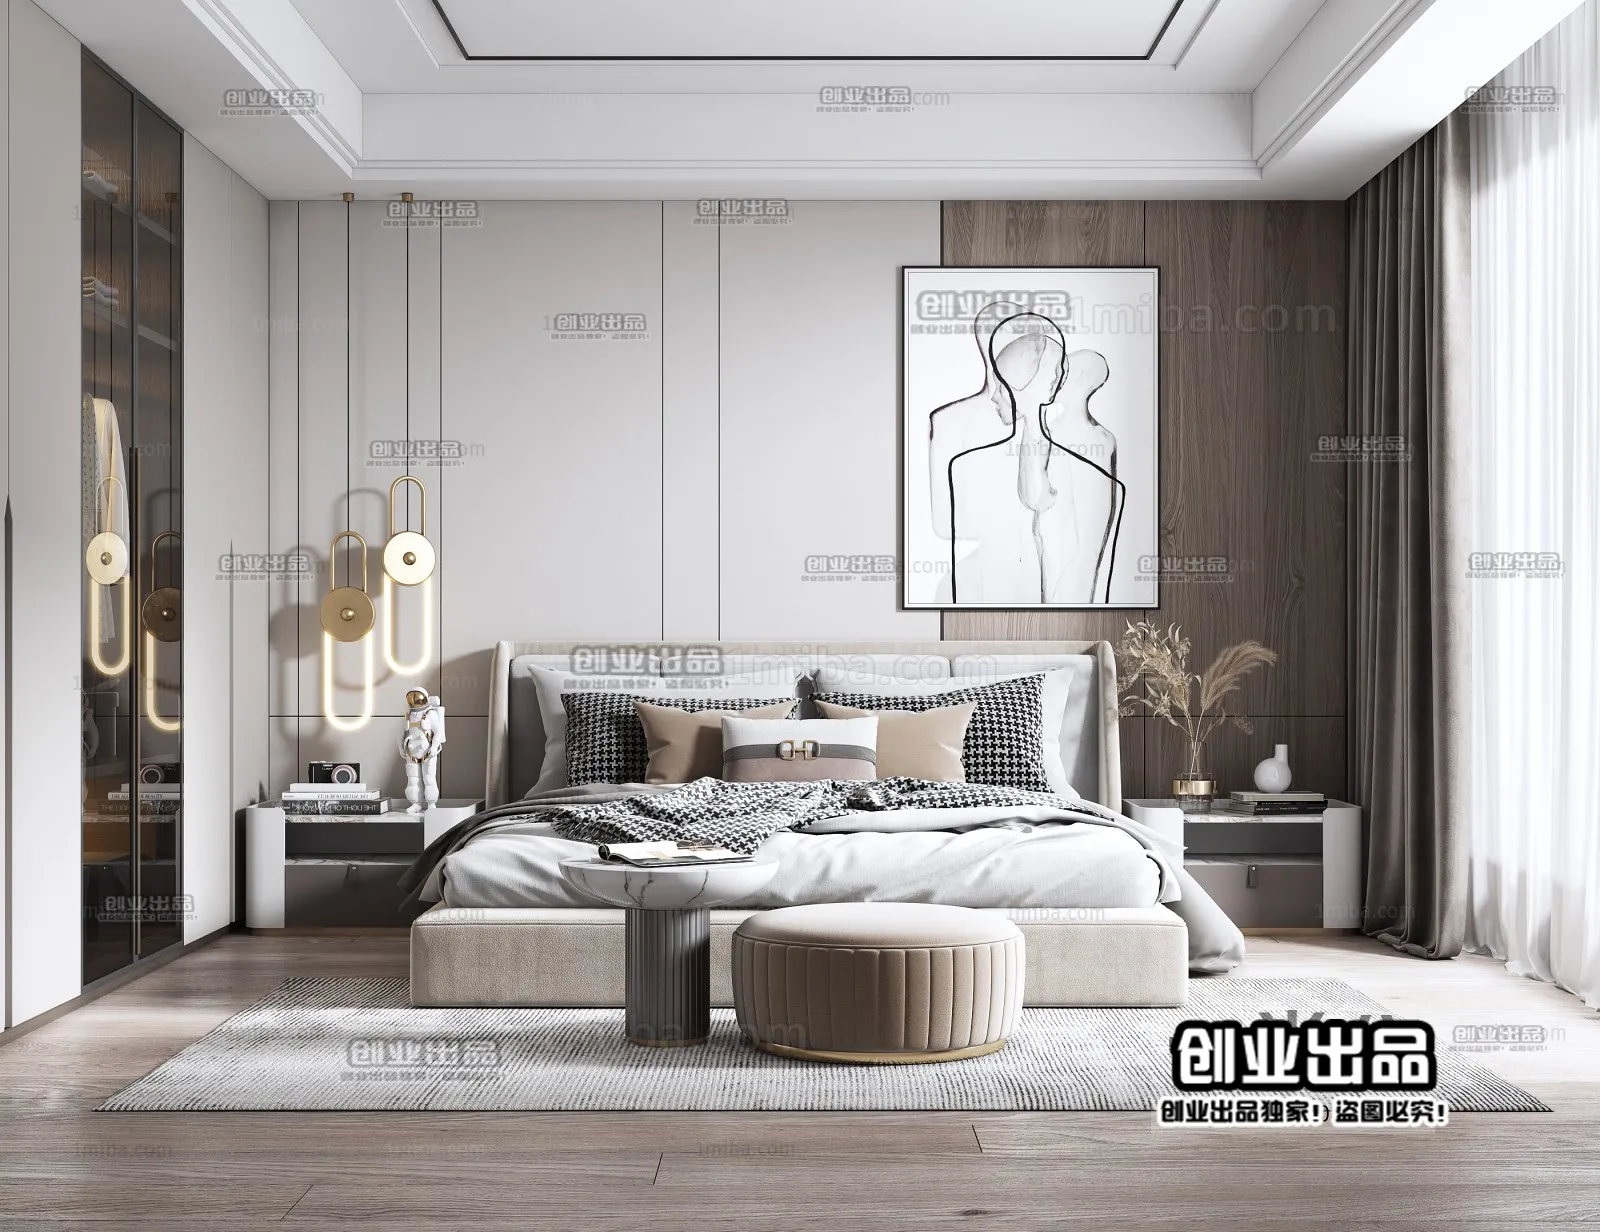 Bedroom – Modern Interior Design – 3D Models – 074